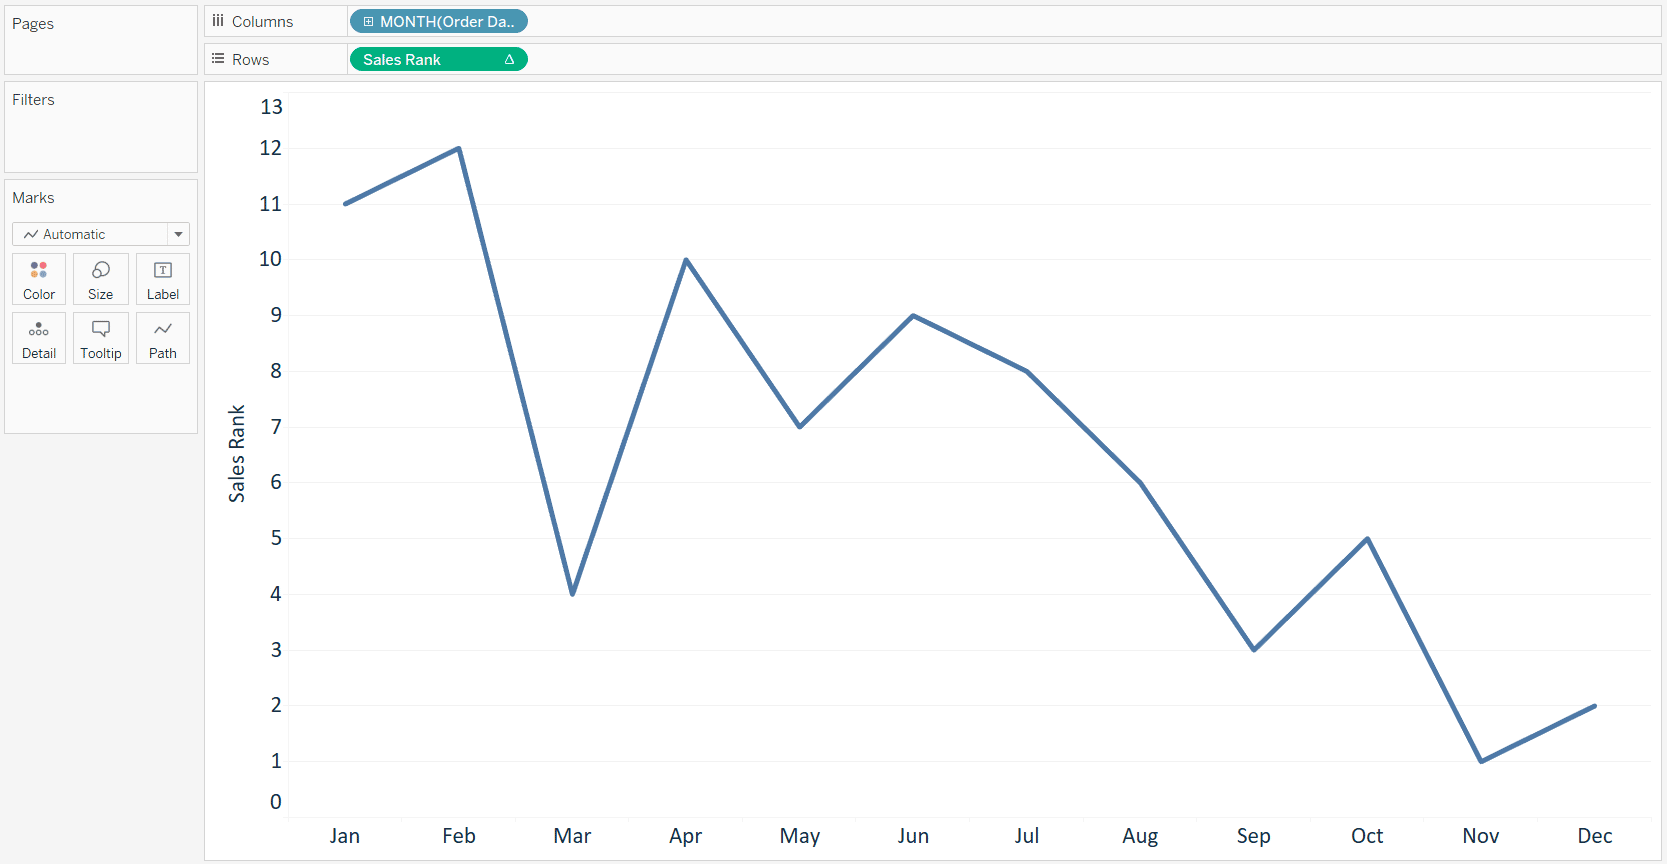 tableau-sales-rank-line-graph